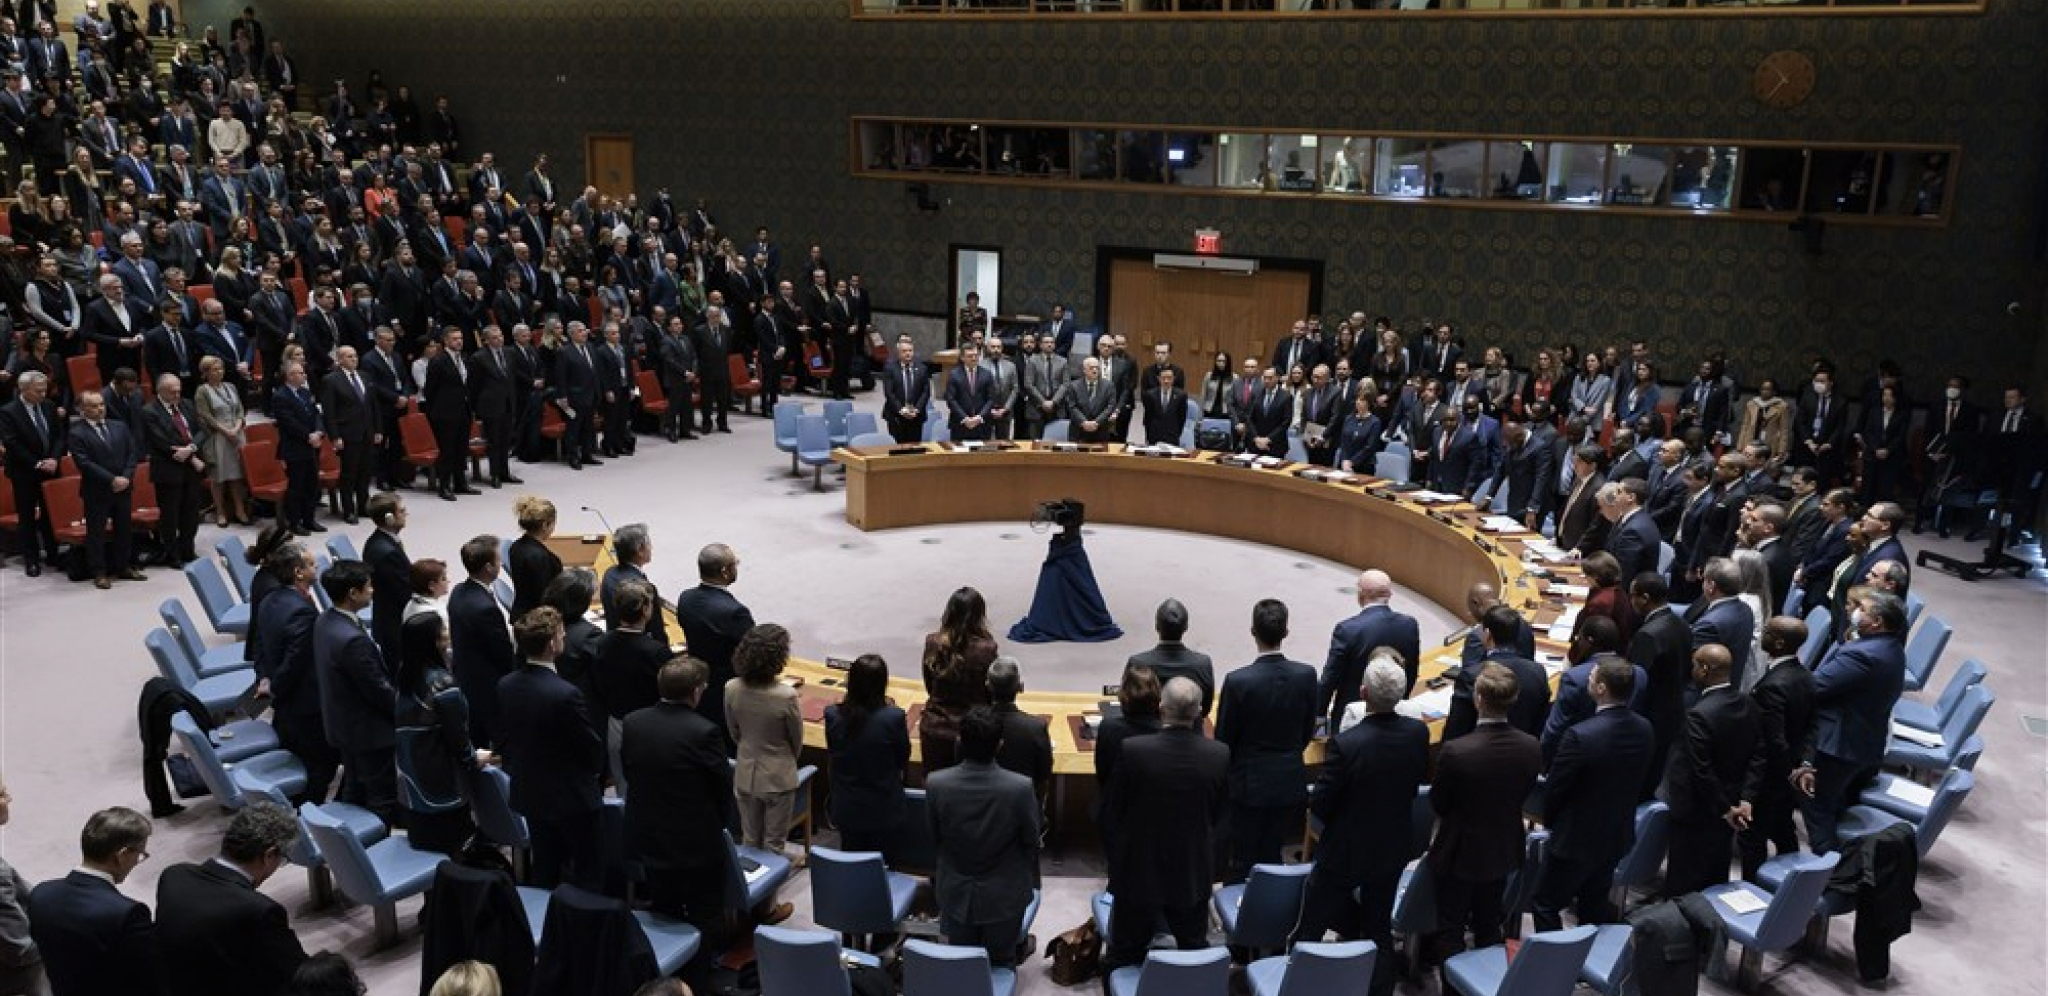 SITUACIJA JE NAPETA Rusija zatražila sastanak Saveta bezbednosti UN